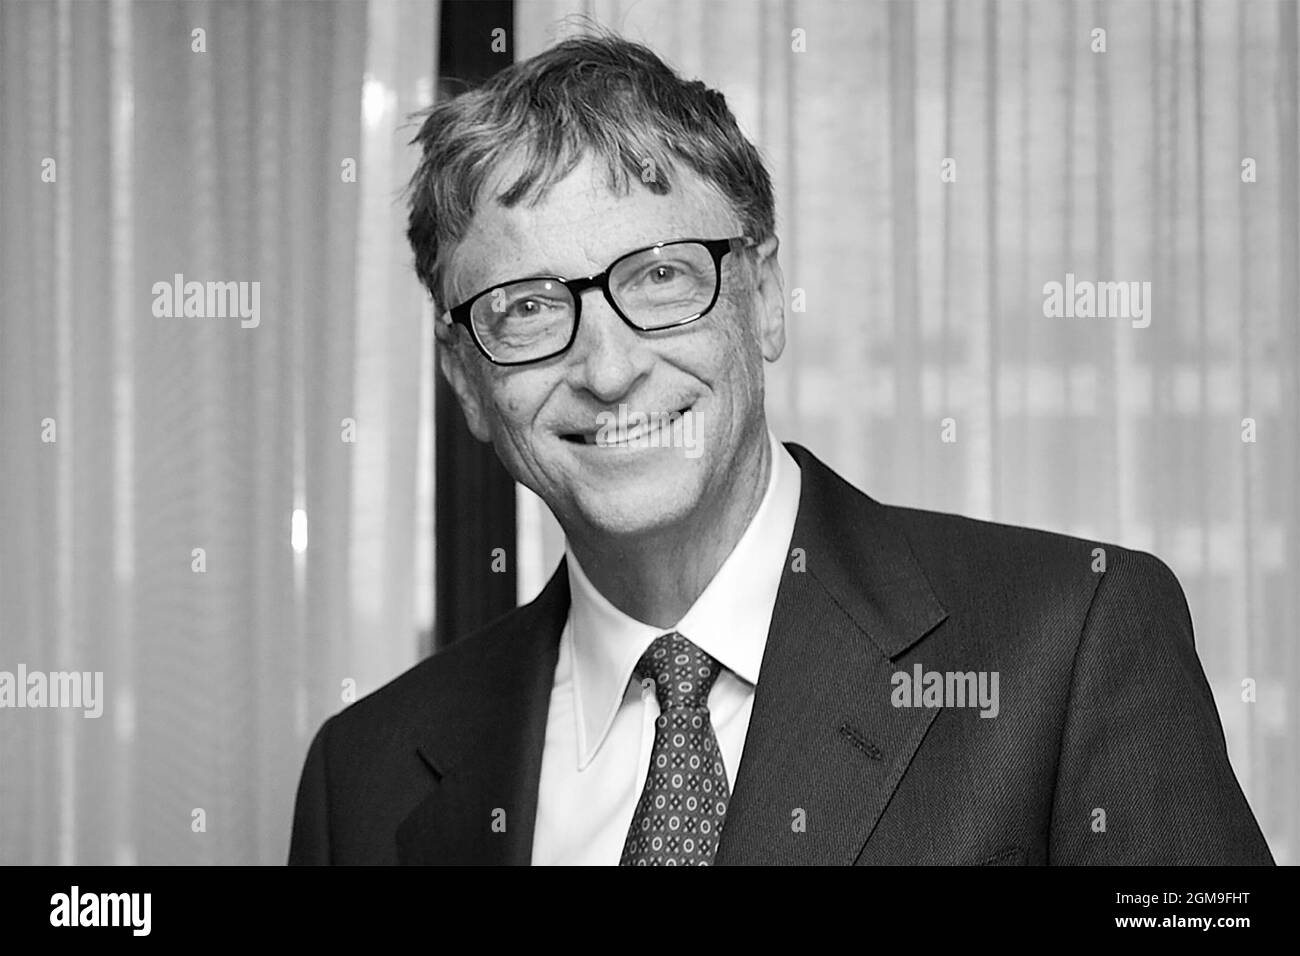 Bill Gates, milliardaire et cofondateur de Microsoft Corporation, au ministère de l'énergie le 8 octobre 2018. (ÉTATS-UNIS) Banque D'Images